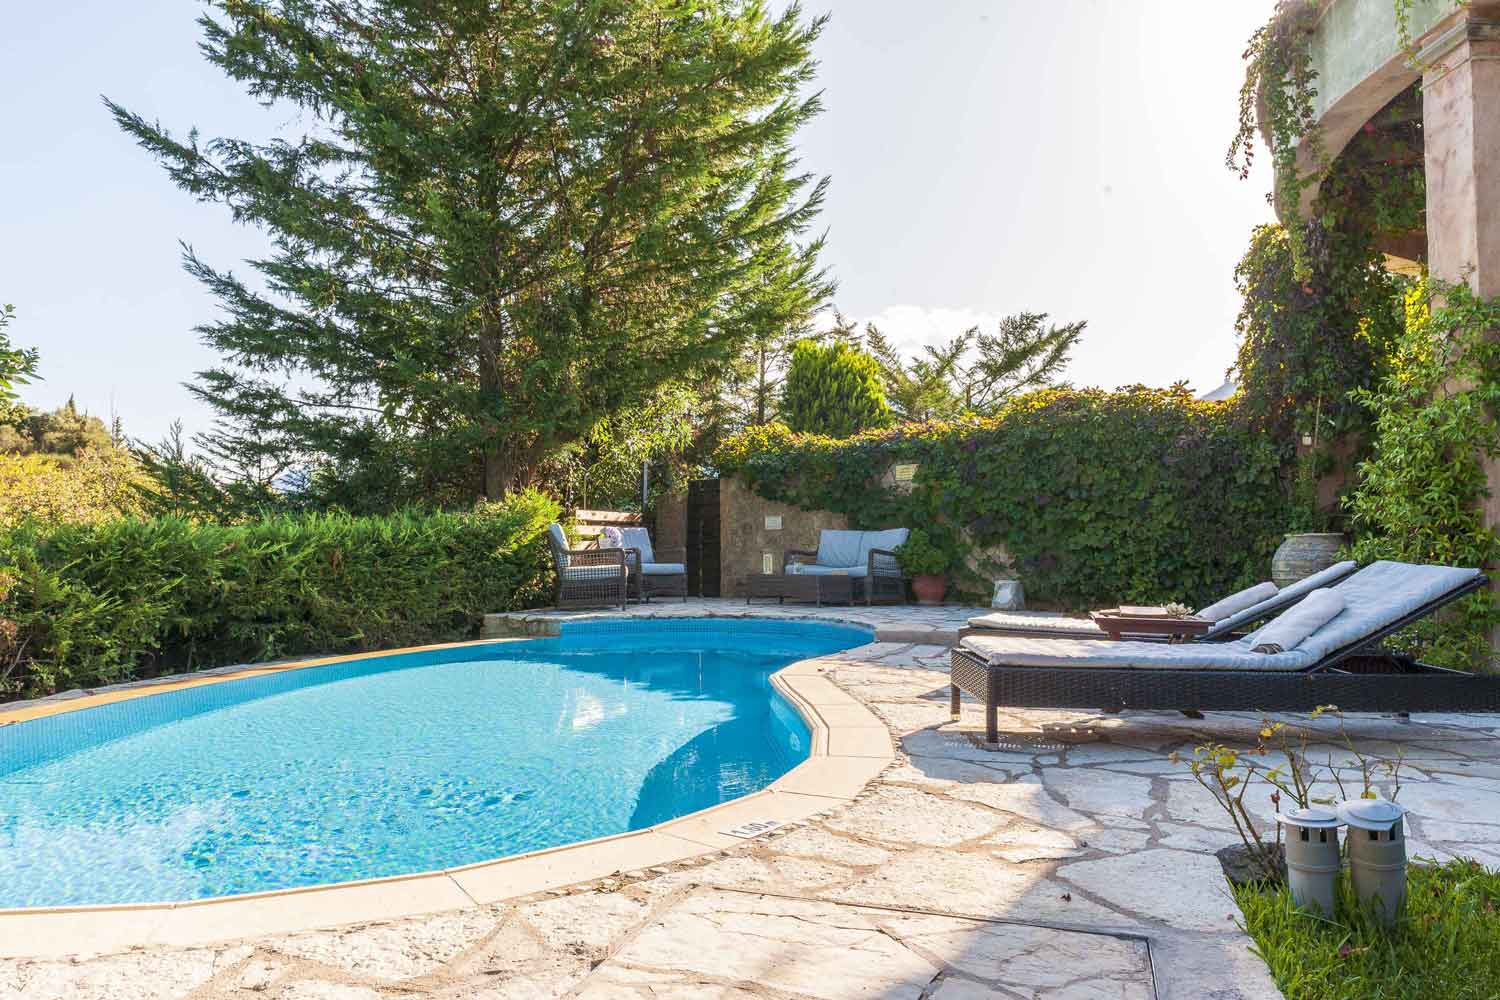 private pool villa in Greece, perfect surrounding landscape